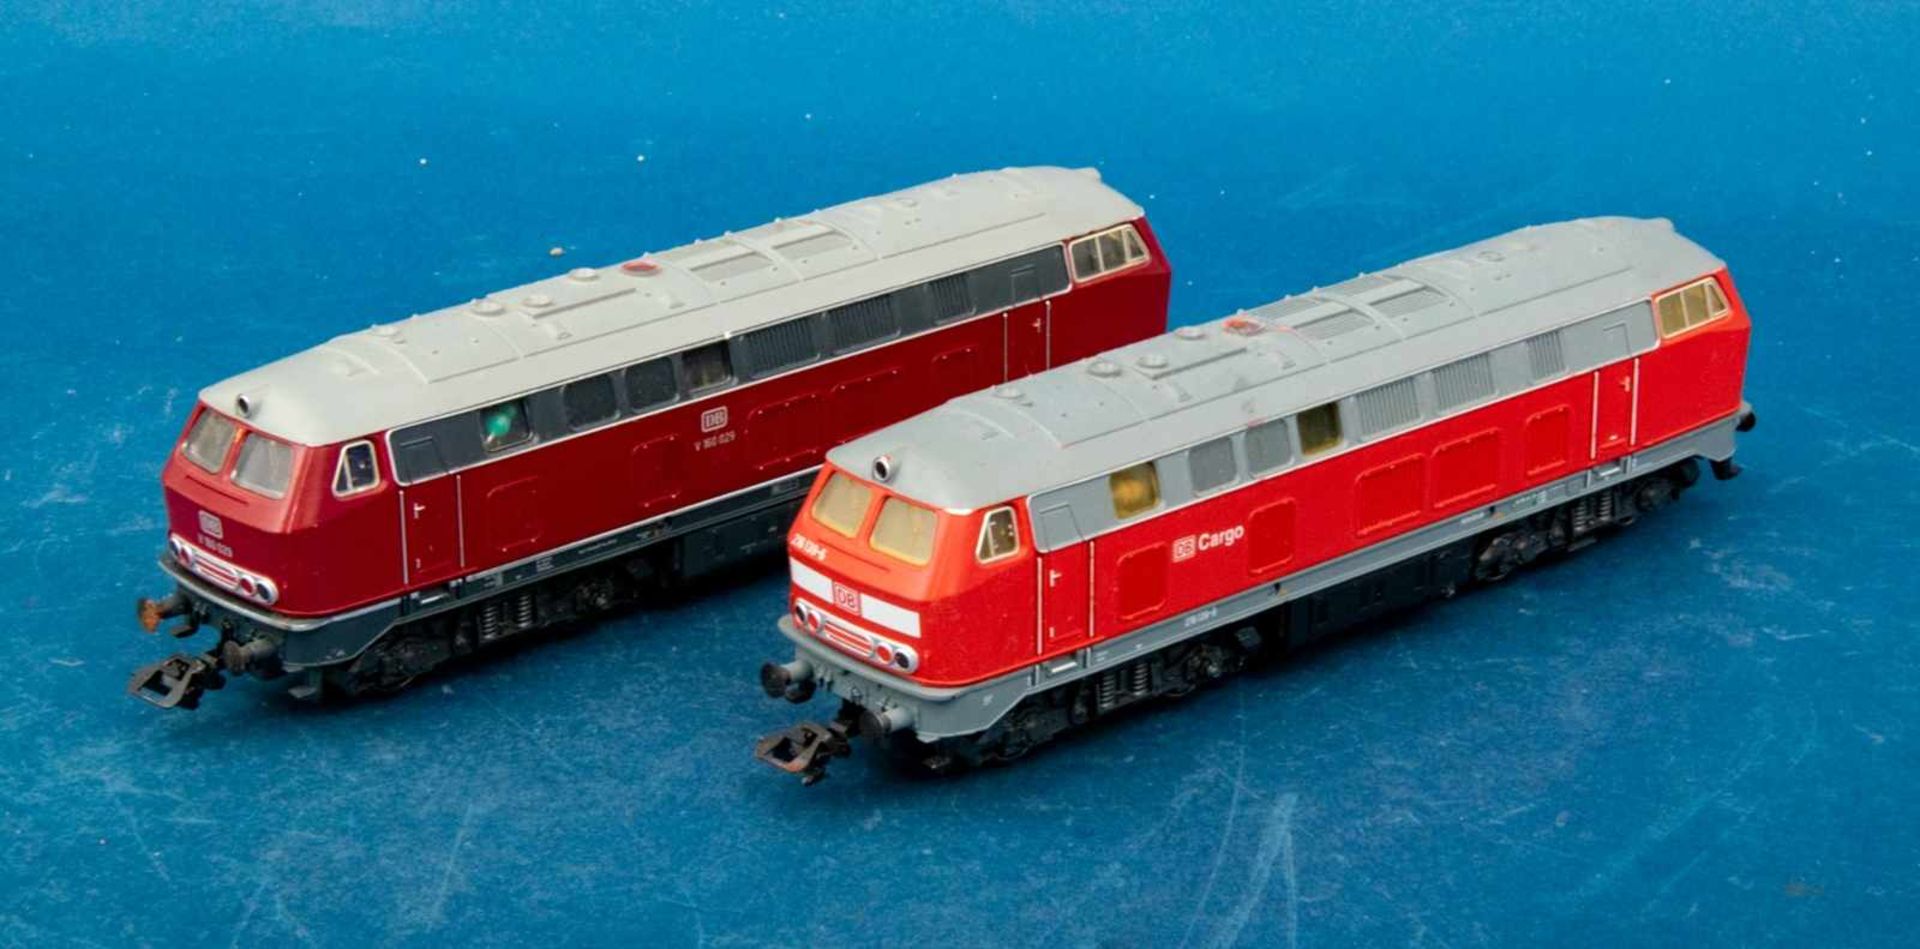 8teiliges Konvolut versch. H0-Lokomotiven, überwiegend Märklin. Ungeprüft/teilweise unvollständig/ - Image 4 of 9